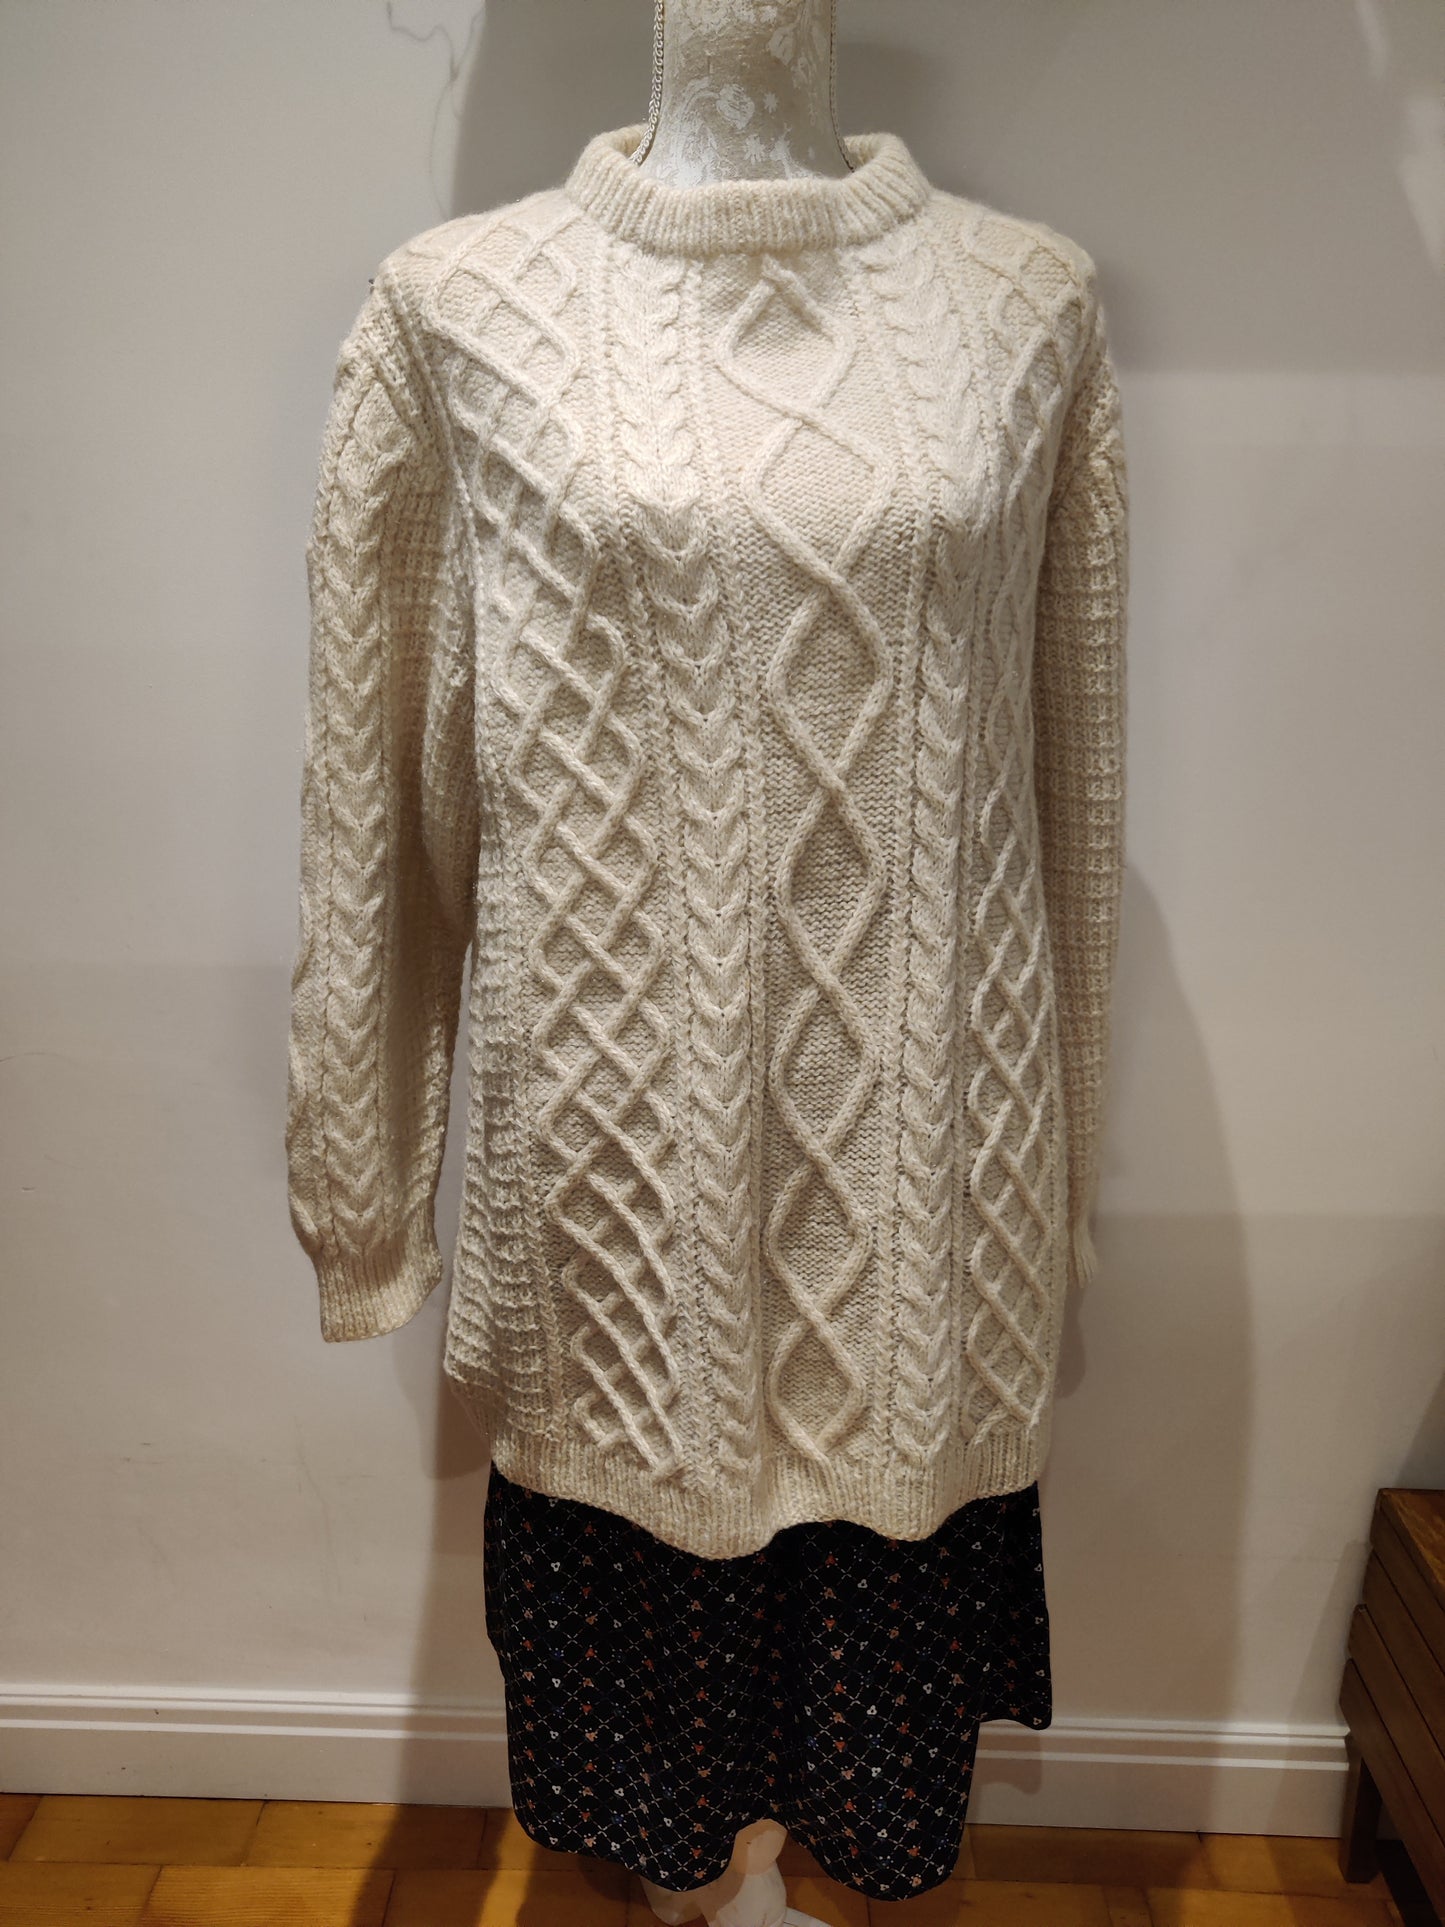 Lovely vintage Aran jumper. Size 20